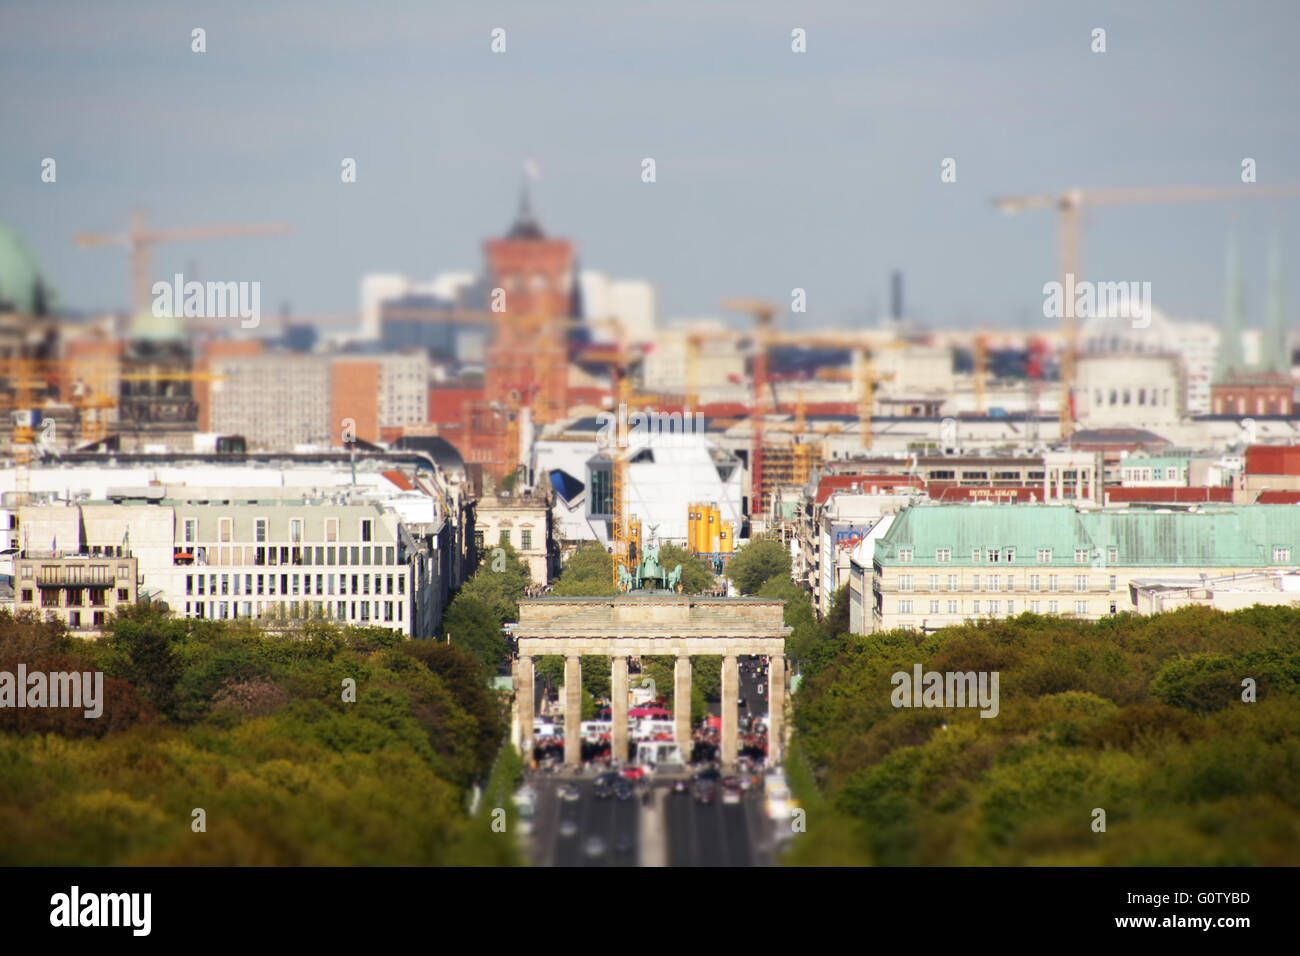 El horizonte de la ciudad de Berlín, la puerta de Brandenburgo y el ayuntamiento rojo - cambio de inclinación Foto de stock